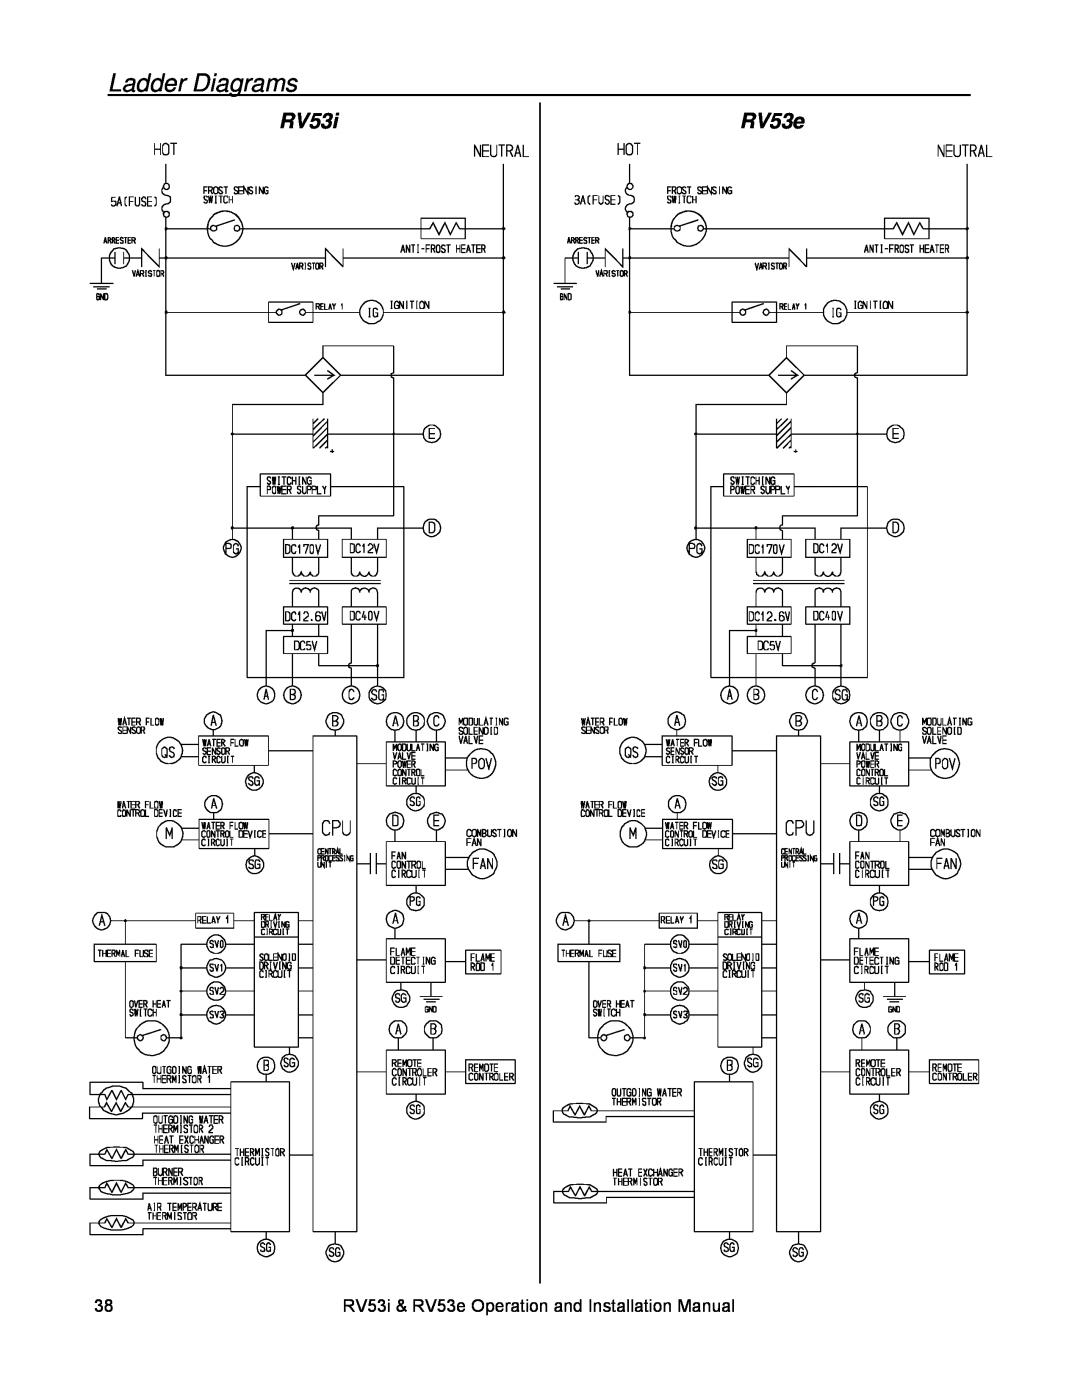 Rinnai RV53E, RV53I installation manual Ladder Diagrams, RV53i, RV53e 